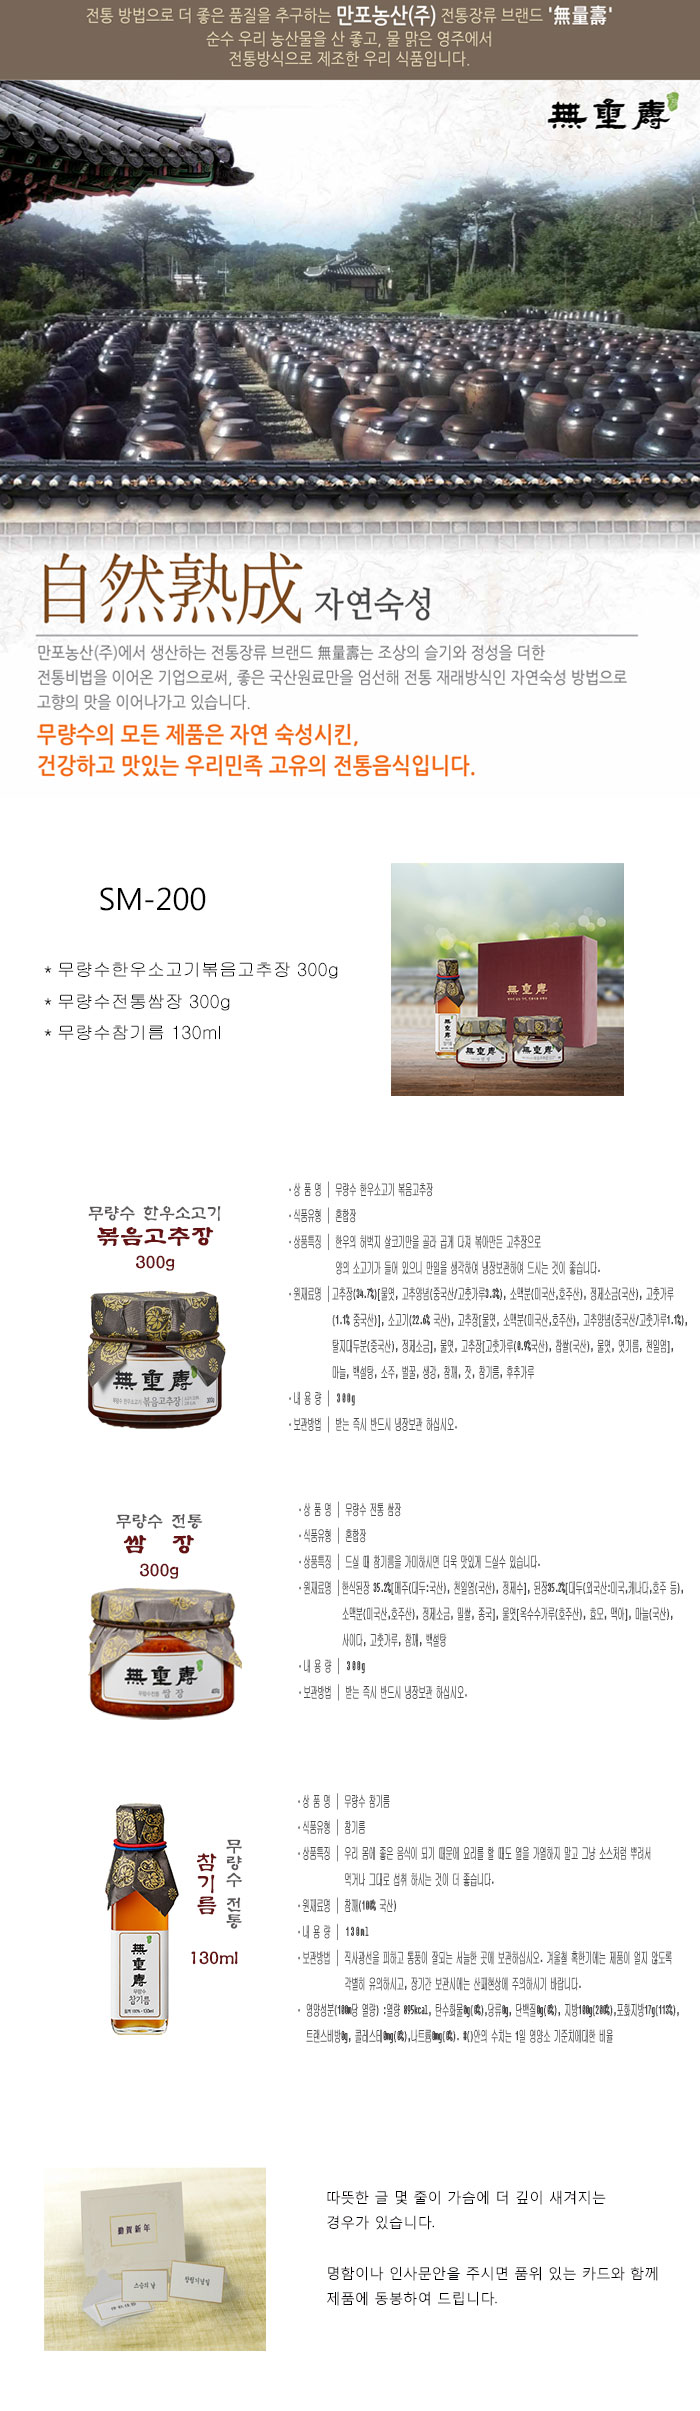 SM-200-웹용.jpg